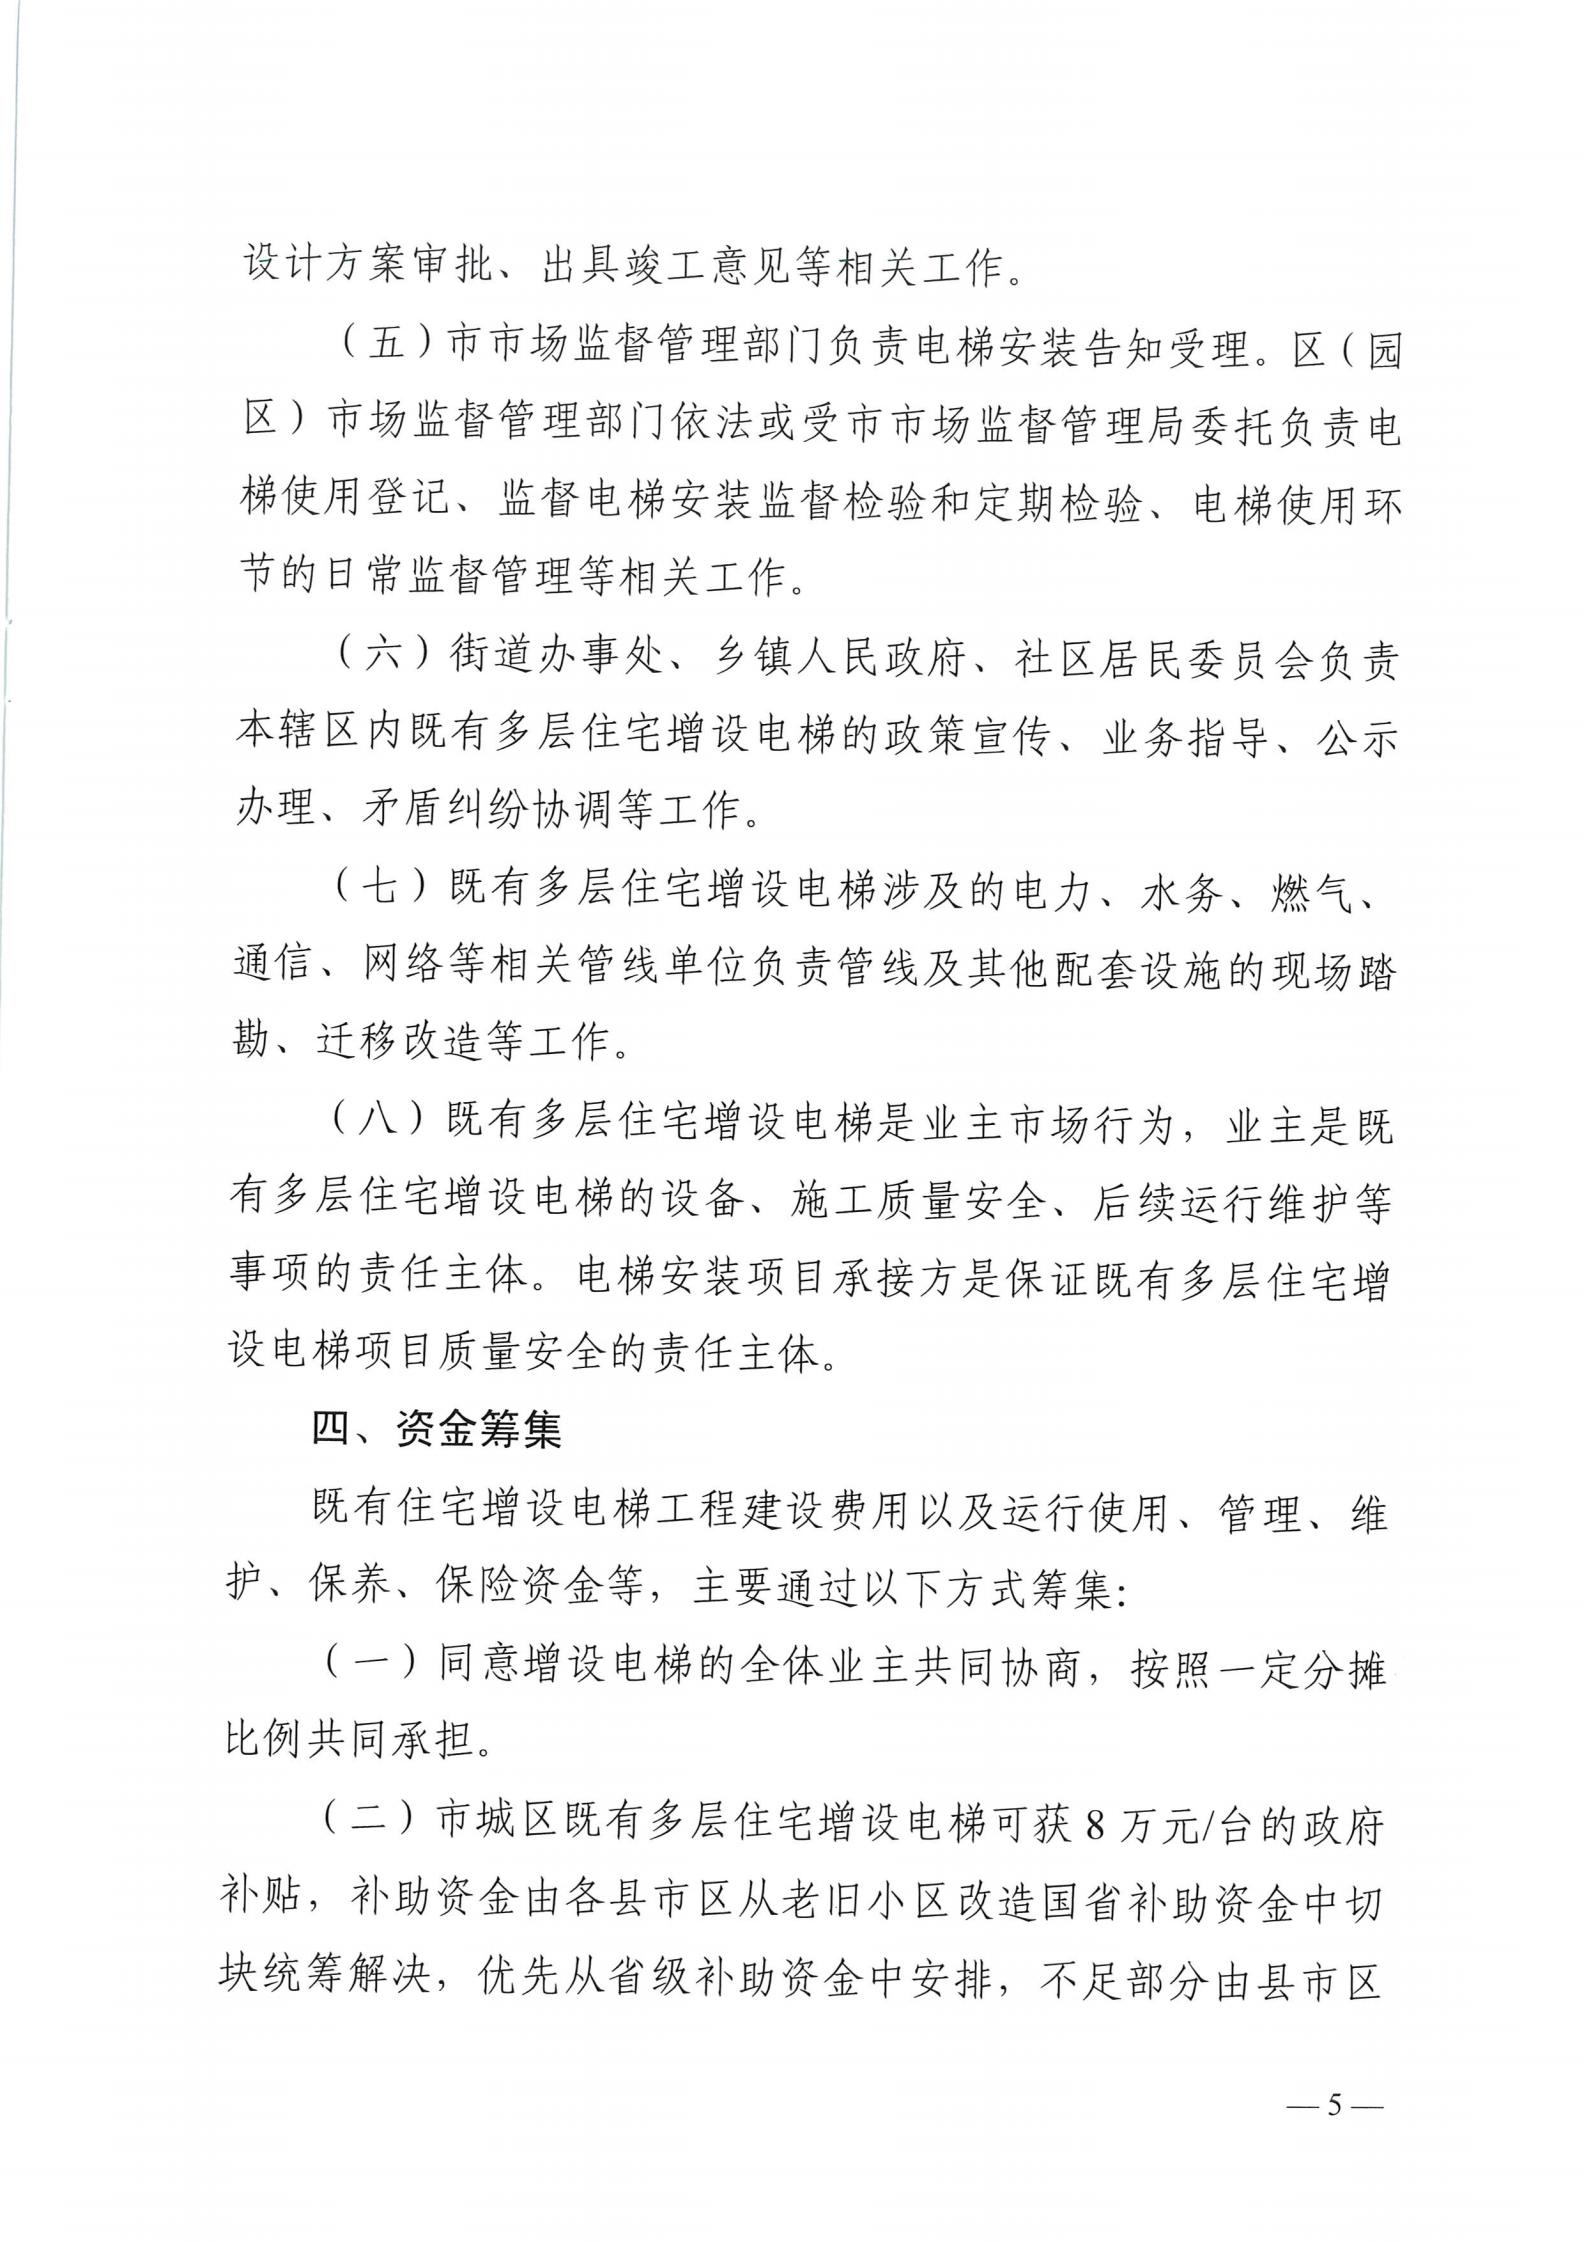 湘潭市六部门印发有关加装电梯的通知(图5)